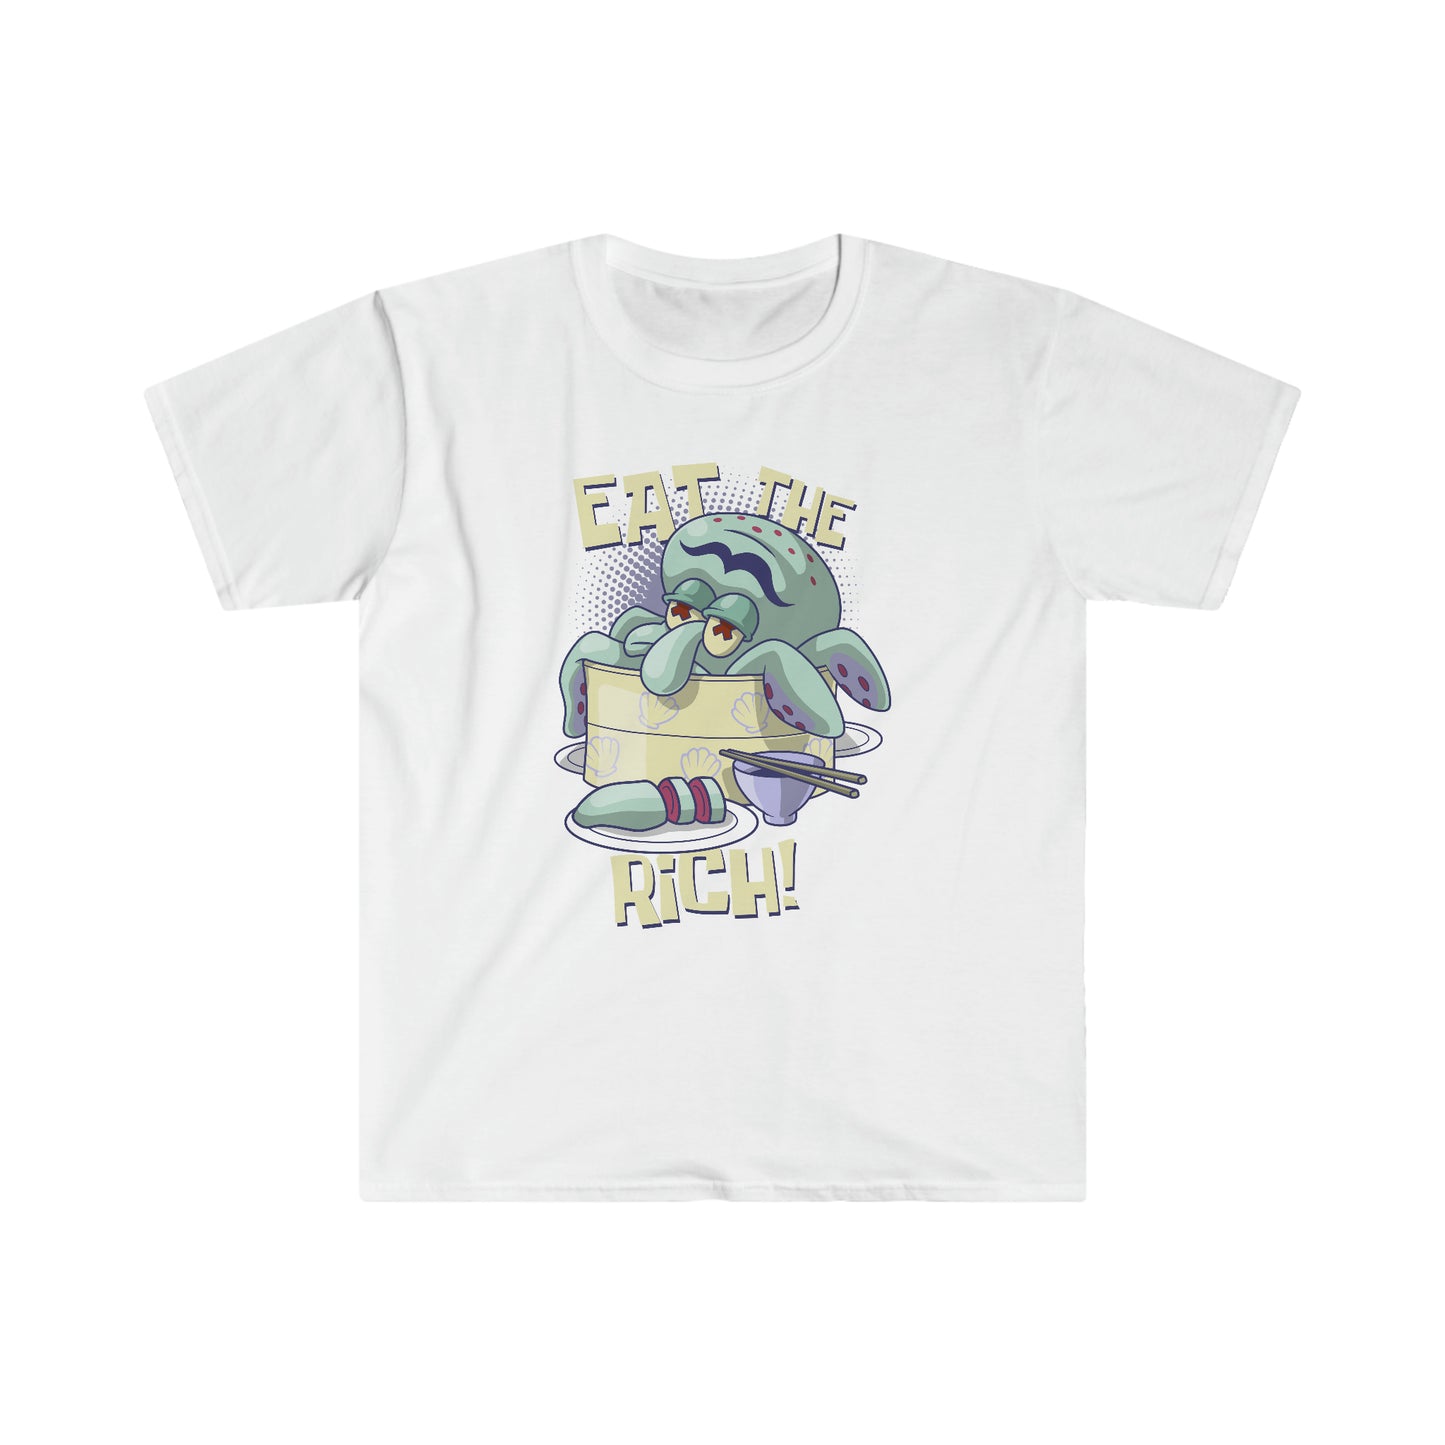 Eat the Rich t-shirt